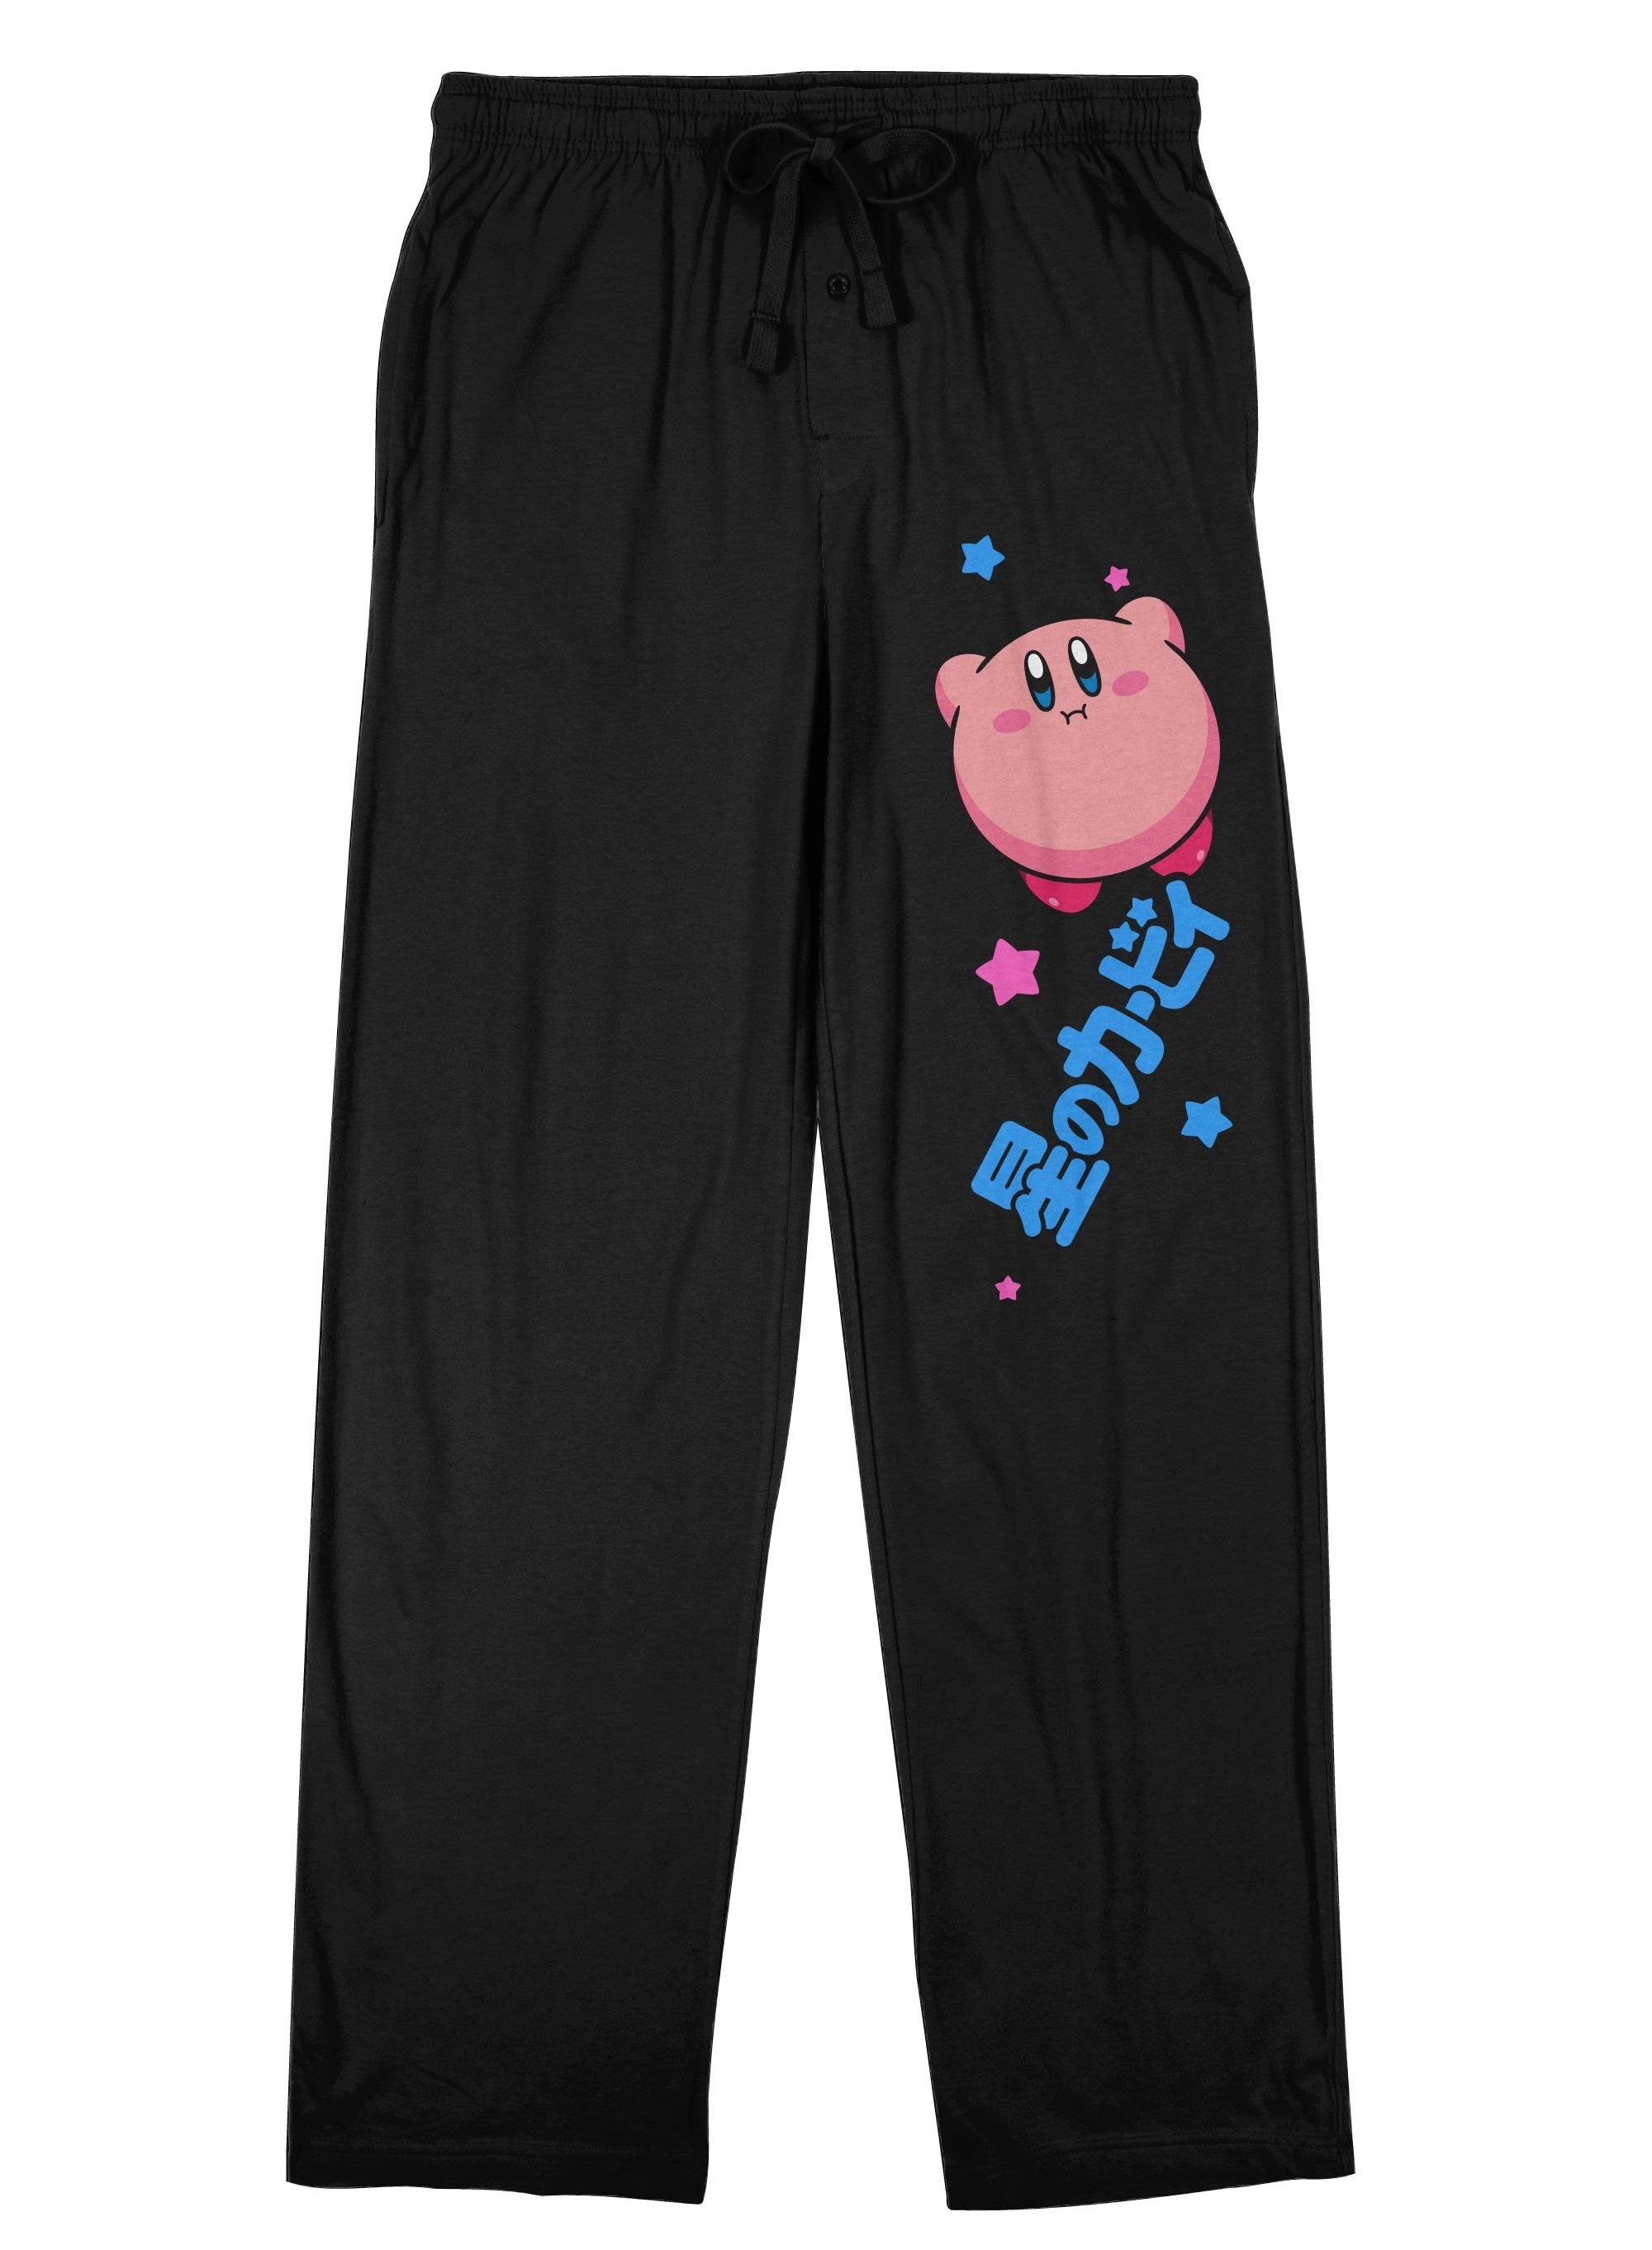 Kirby - Kirby Floating Men's Black Pajama Pants | GameStop